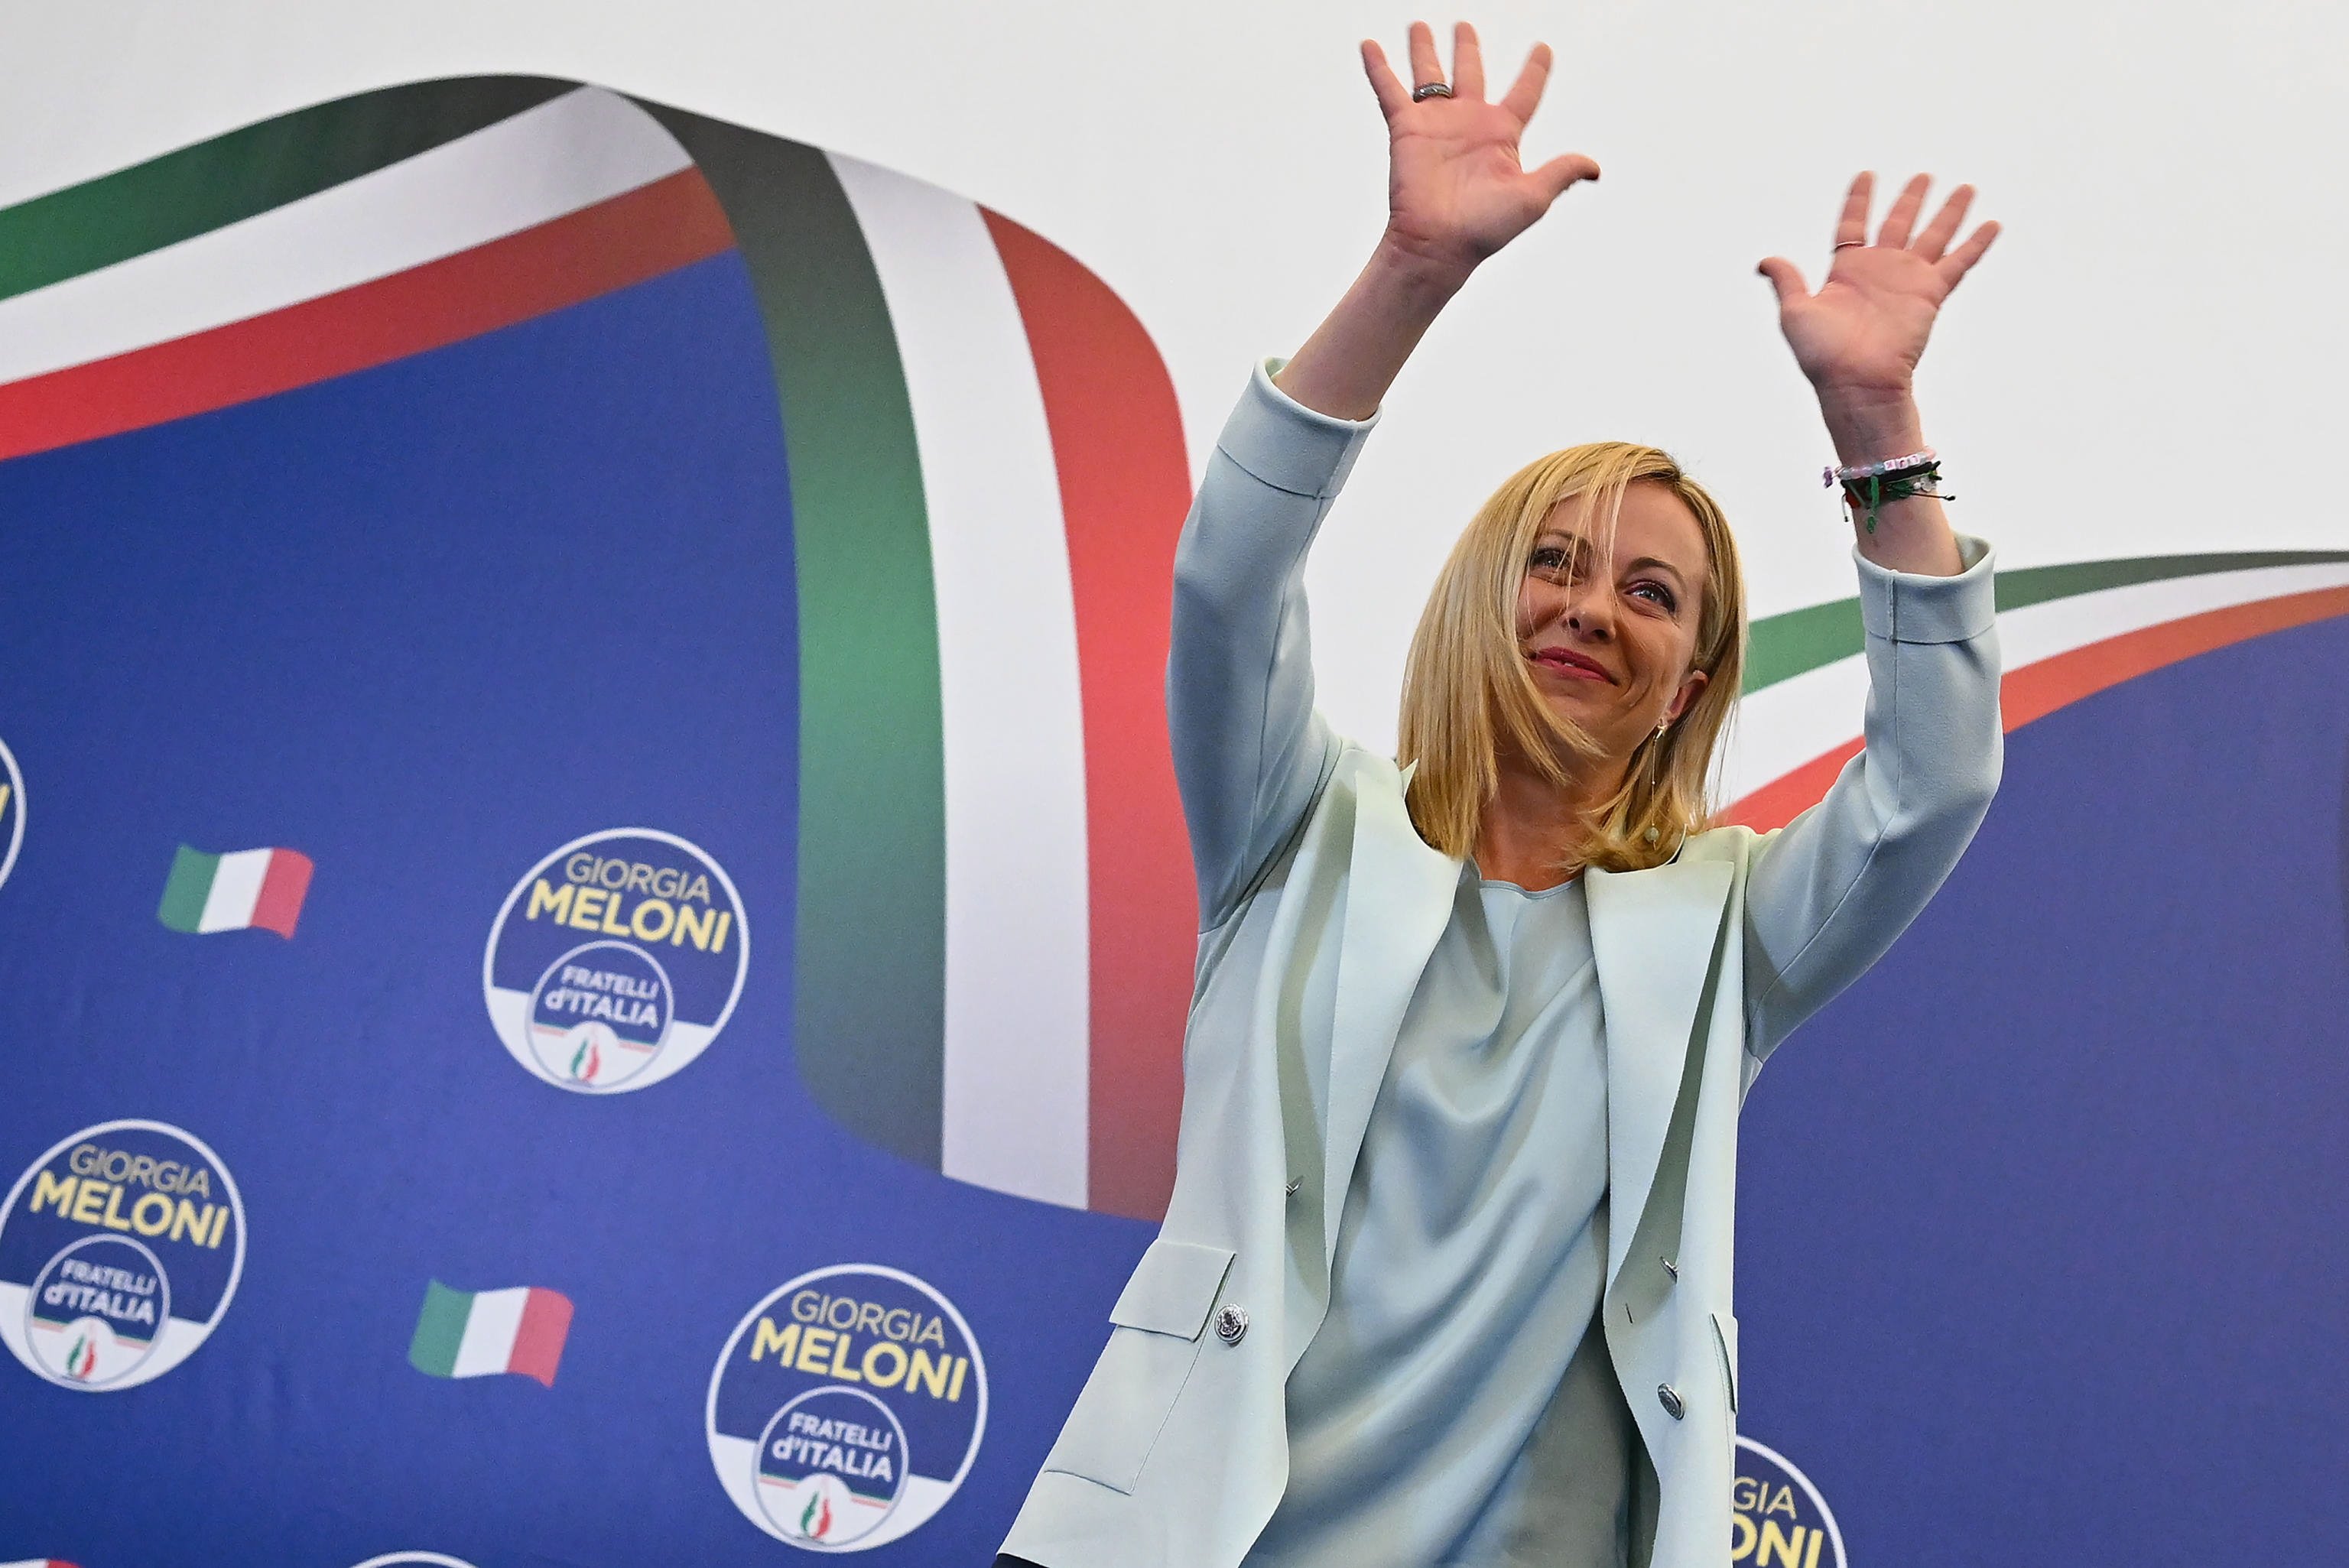 L’extrema dreta de Giorgia Meloni arrasa a Itàlia i guanya les eleccions, segons sondeigs